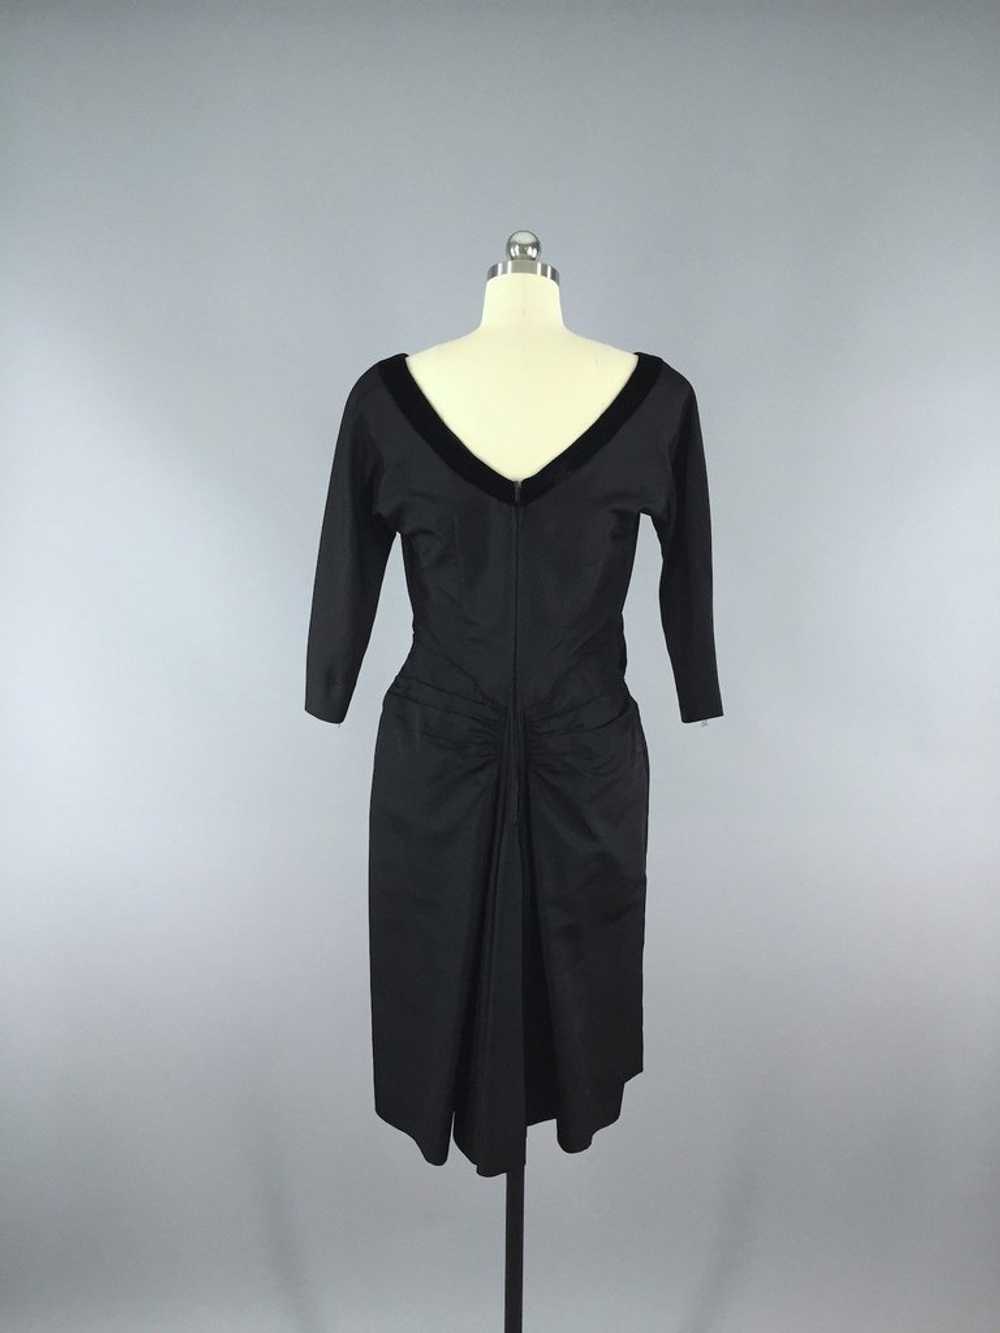 Vintage 1950s Black Taffeta New Look Dress - image 5